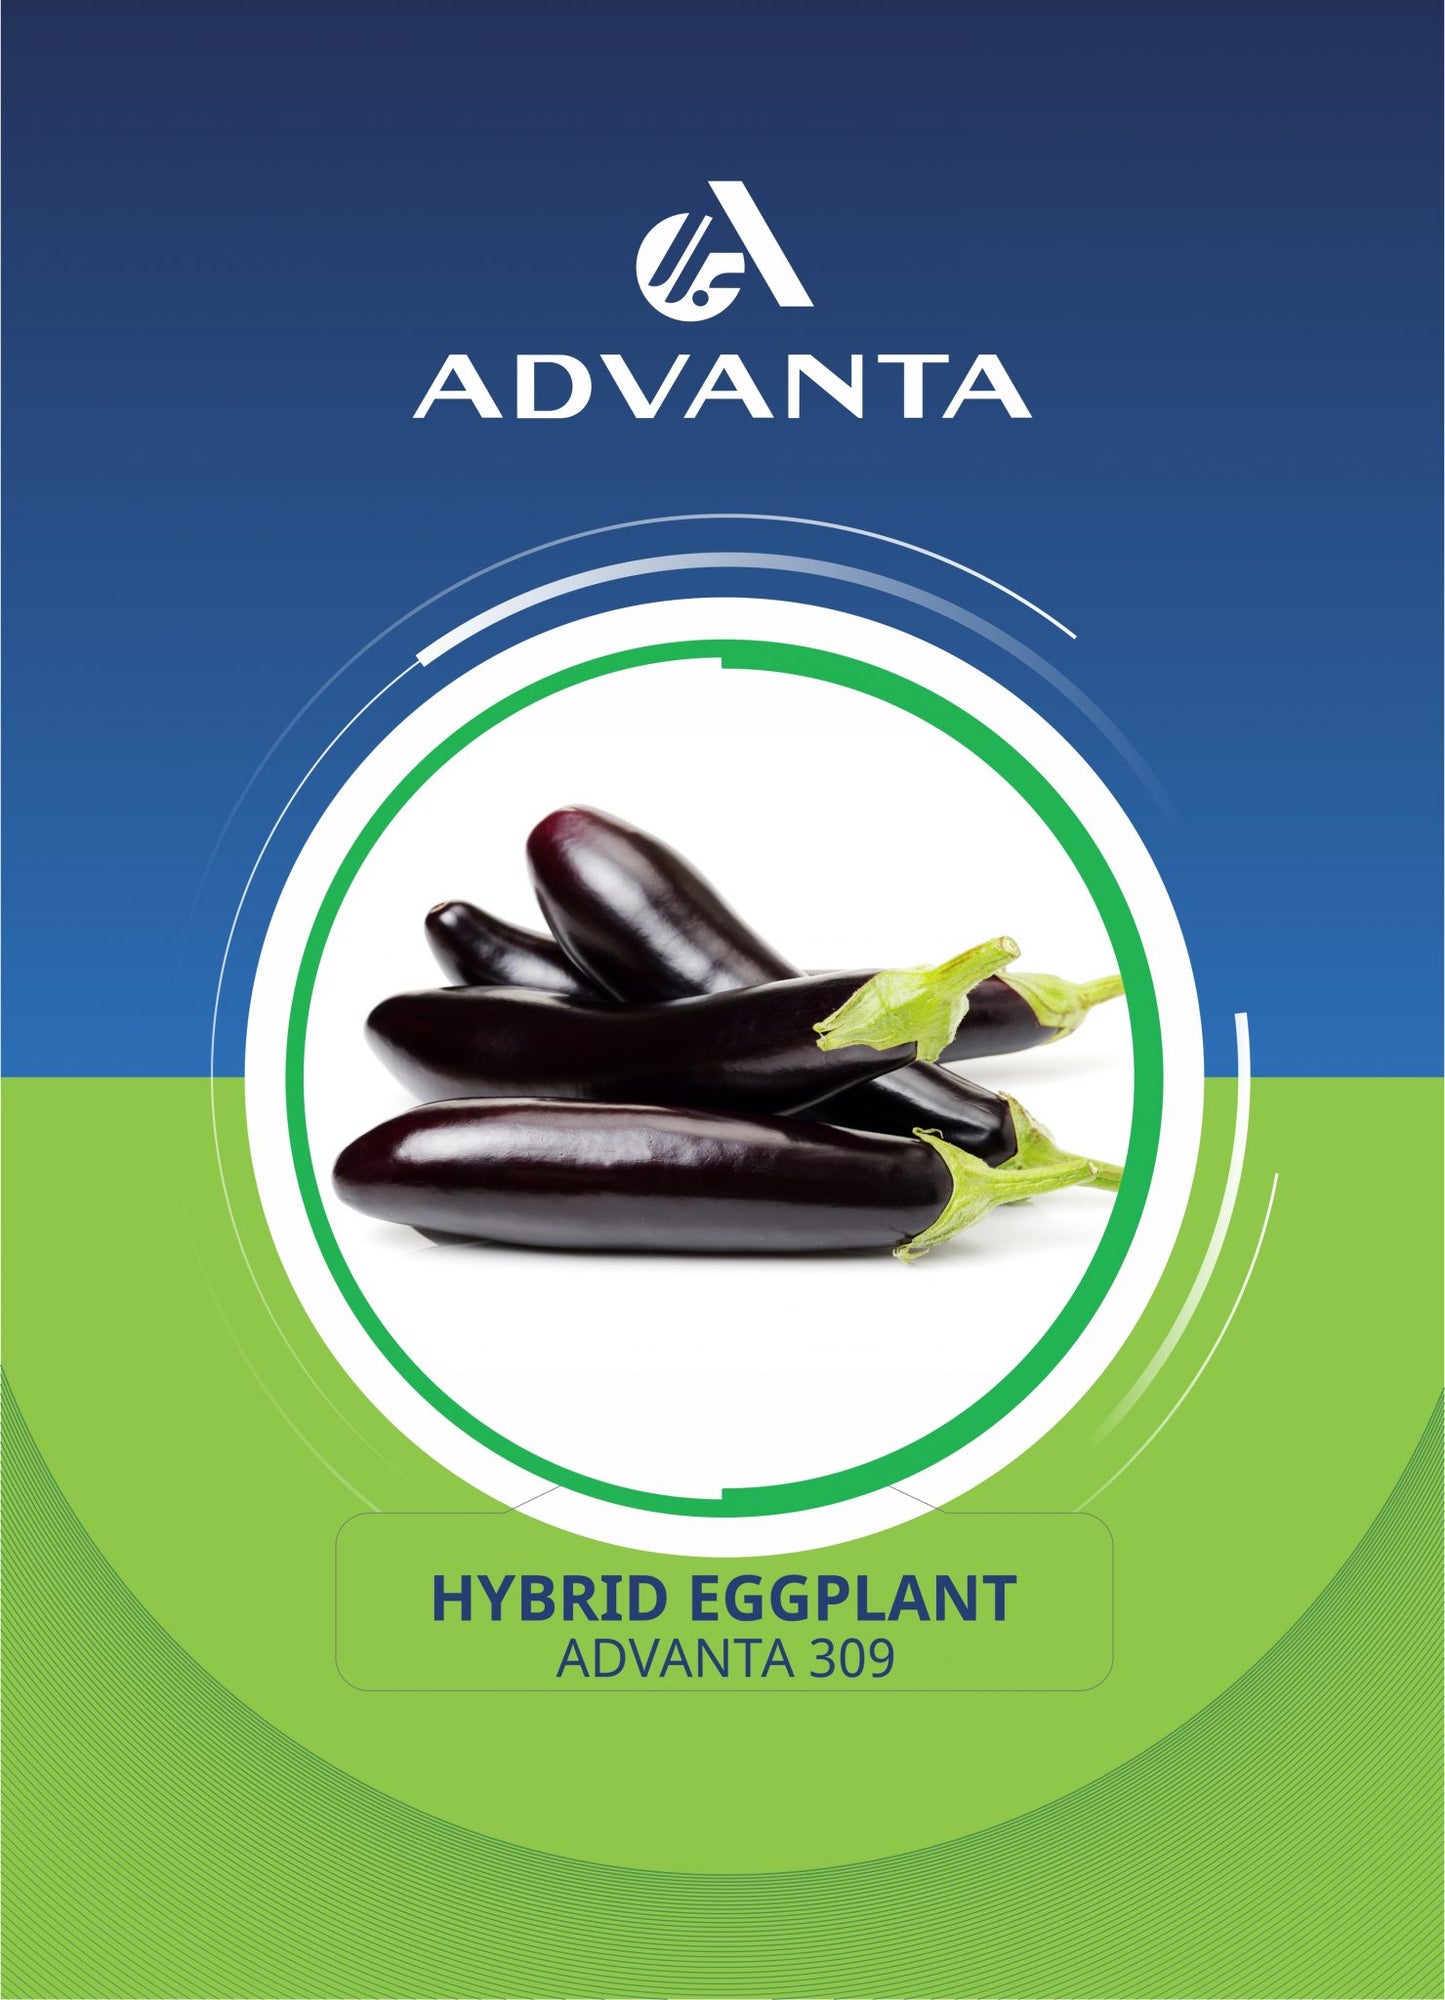 Advanta 309 Hybrid Eggplant Seeds 5g